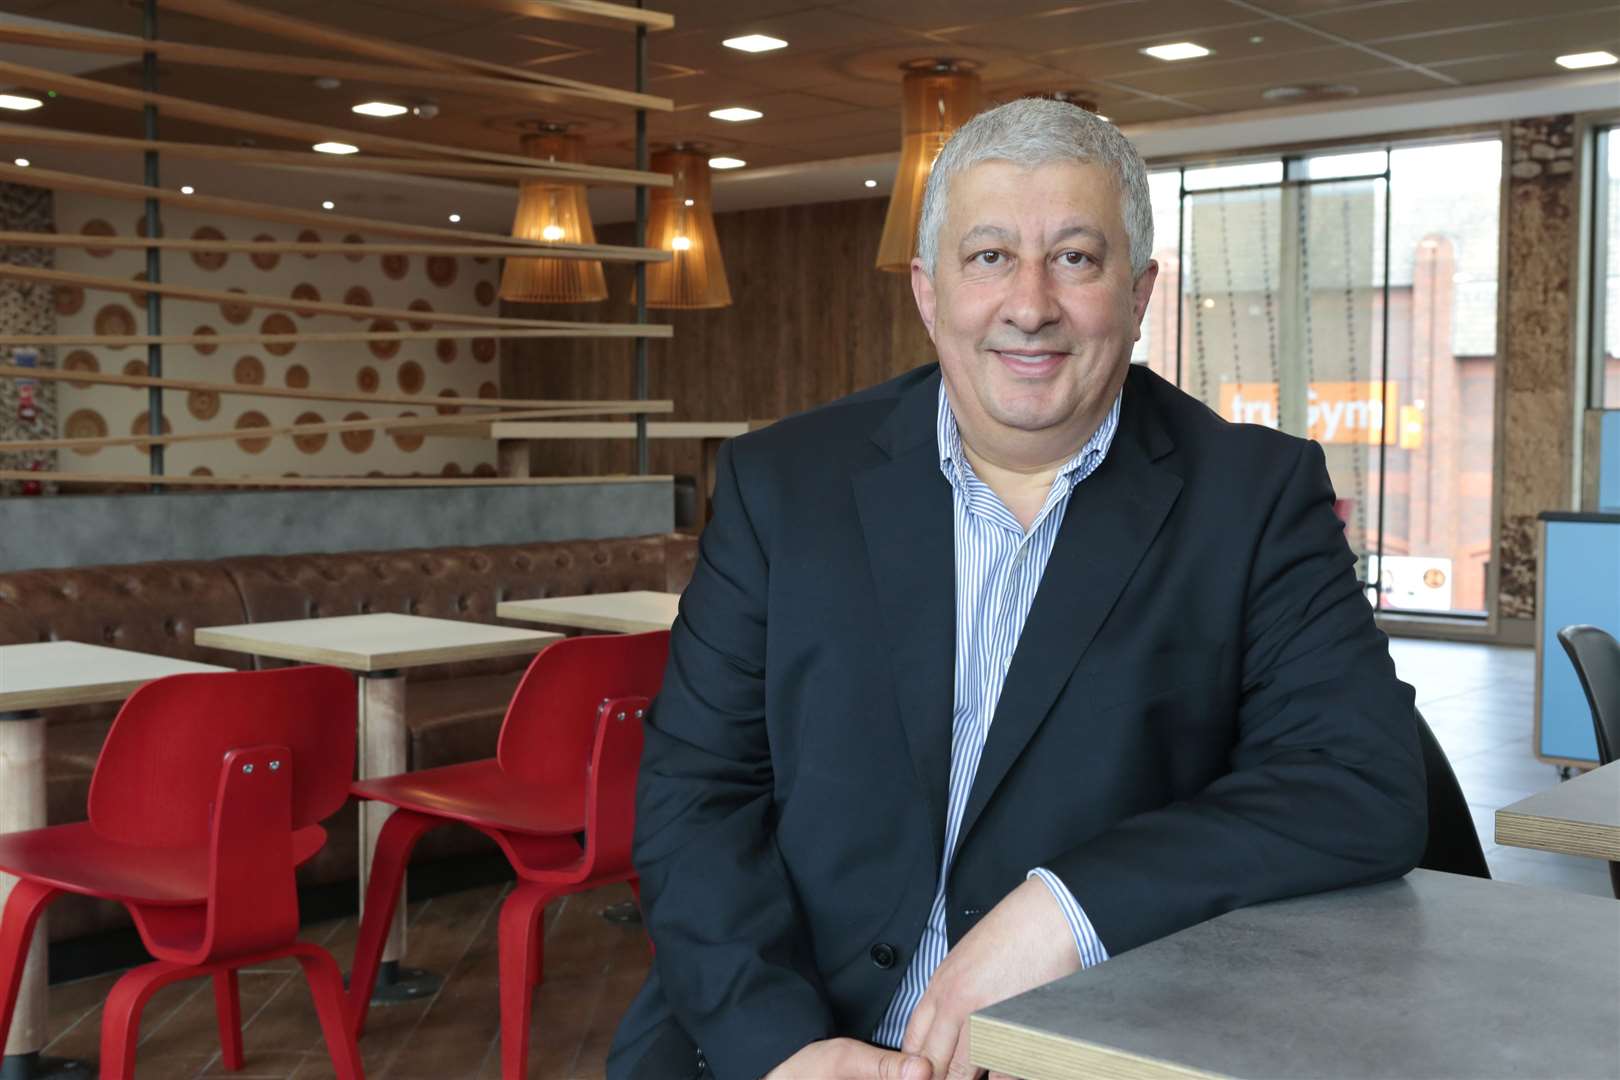 McDonald's franchise owner Ali El Hajj